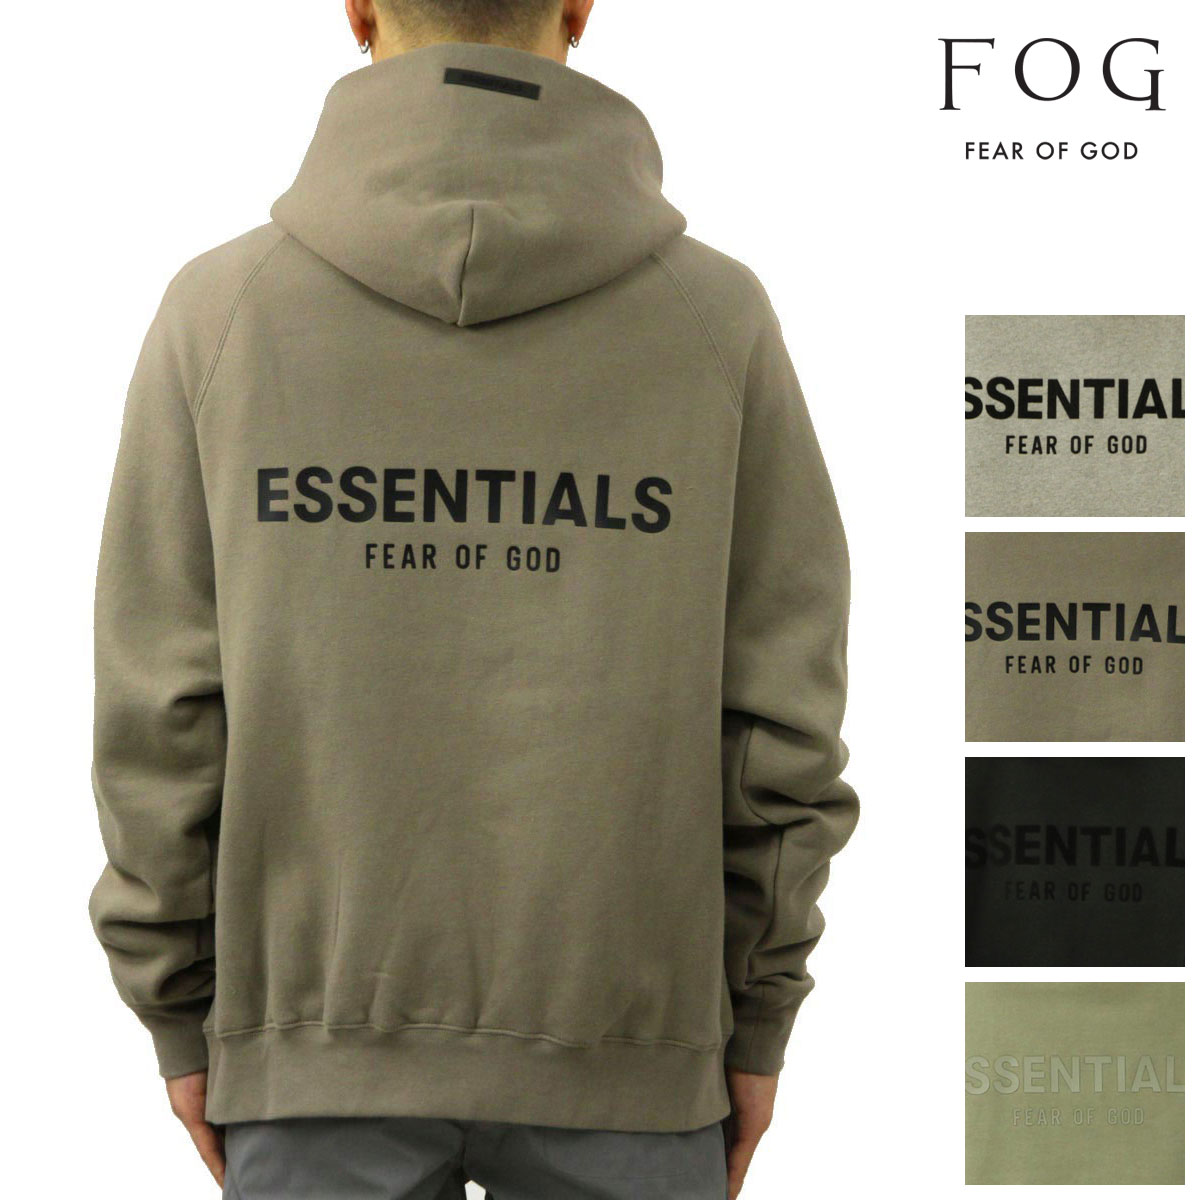 【ボーナスストア 誰でも+5% 4/9 0:00〜4/9 23:59】 フィアオブゴッド fog essentials パーカー メンズ 正規品  FEAR OF GOD エッセンシャルズ ロゴ FOG - F